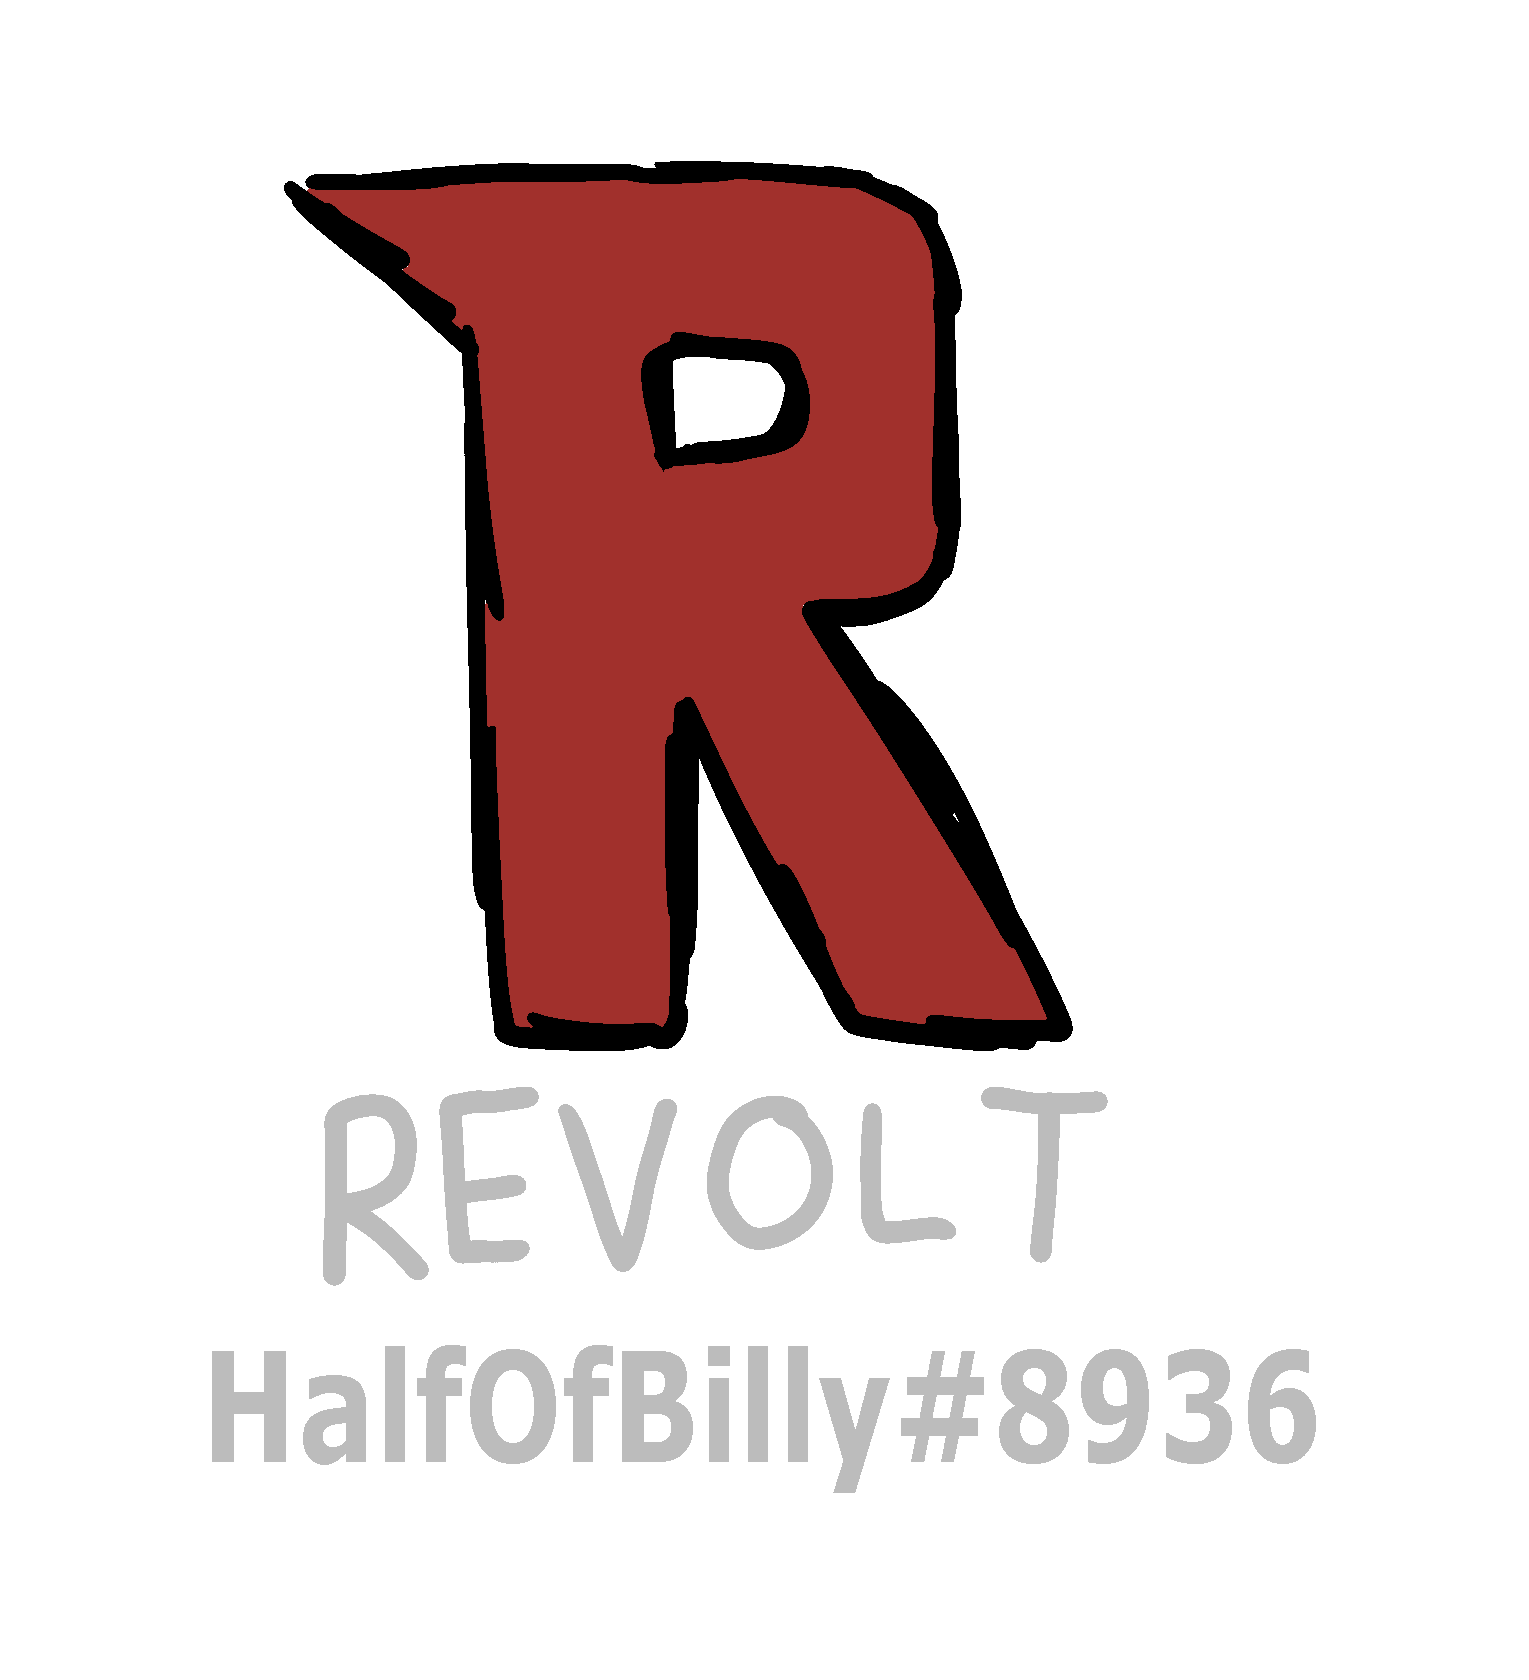 Revolt chat link: HalfOfBilly#8936